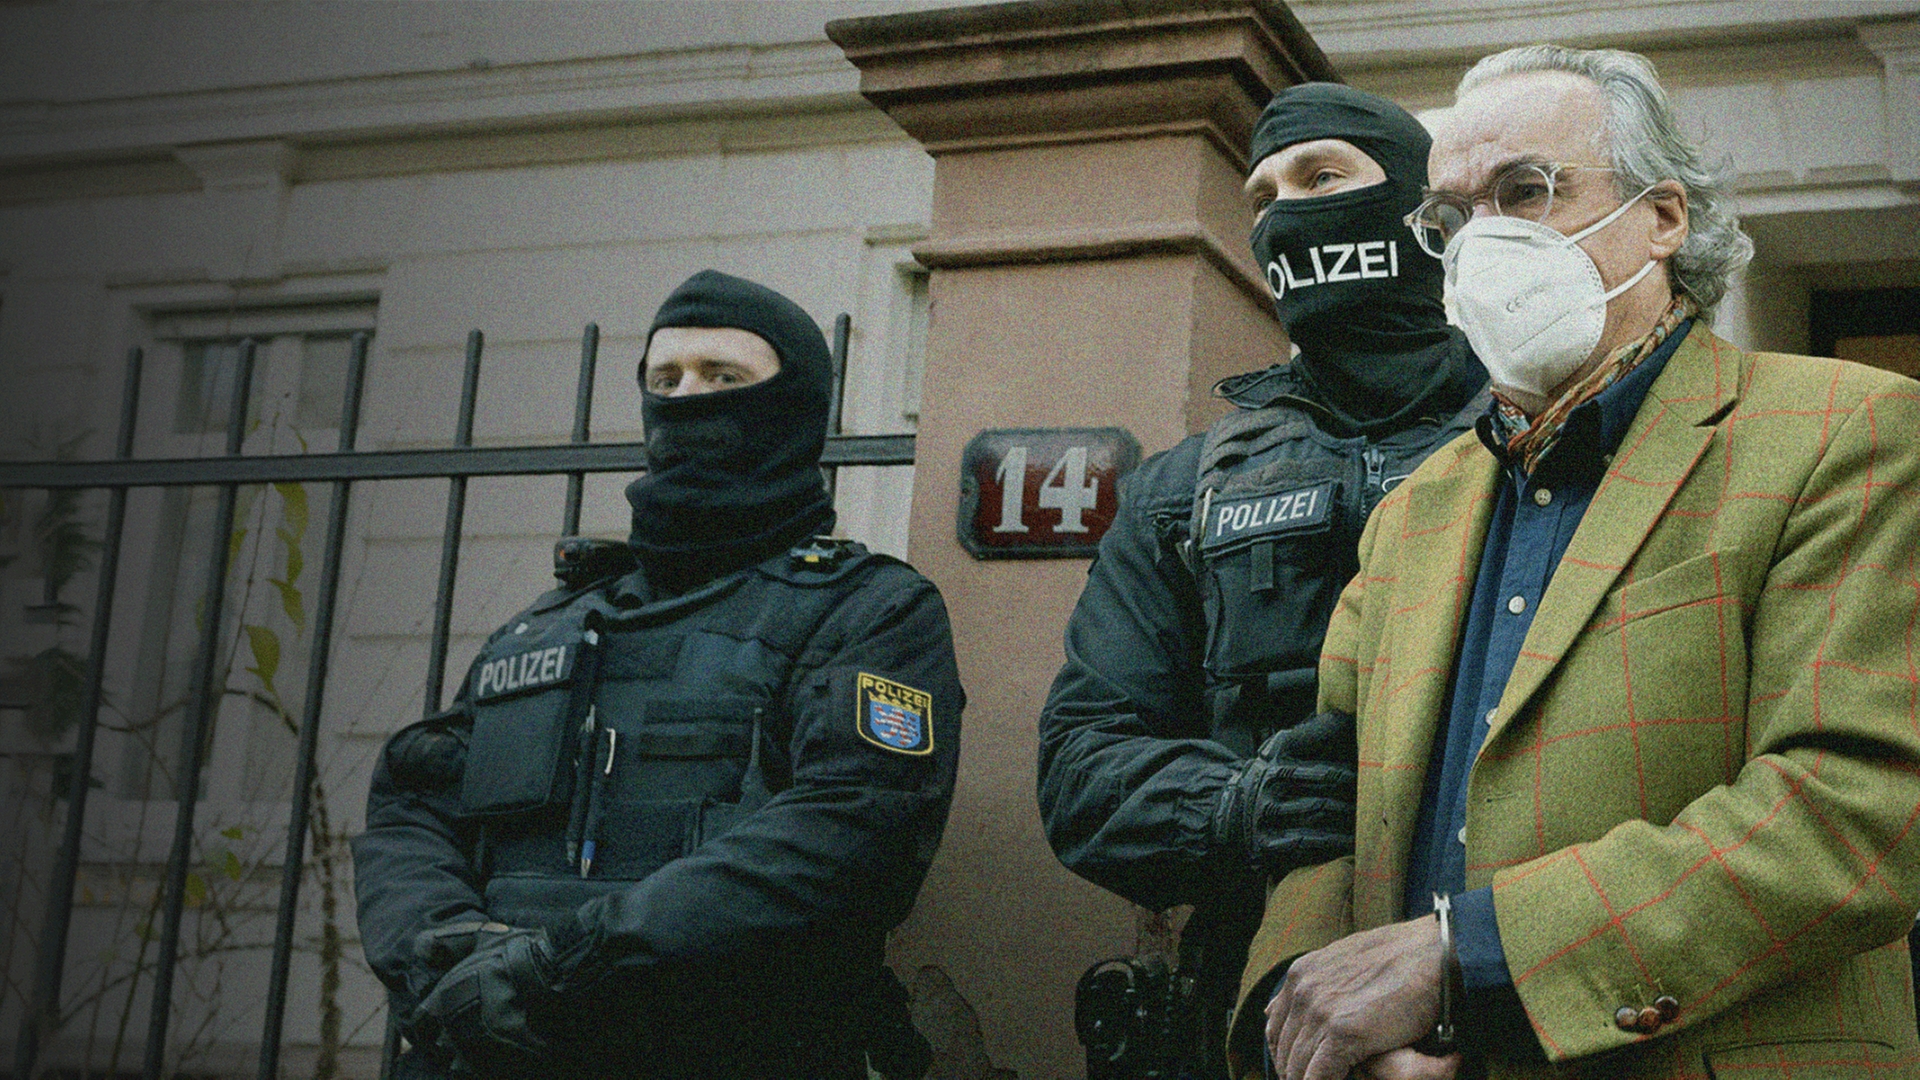 Der Reichsbürger Heinrich XIII. Prinz Reuß wird nach Razzia gegen Reichsbürger vor seinem Wohnhaus von Polizisten in Handschellen abgeführt.